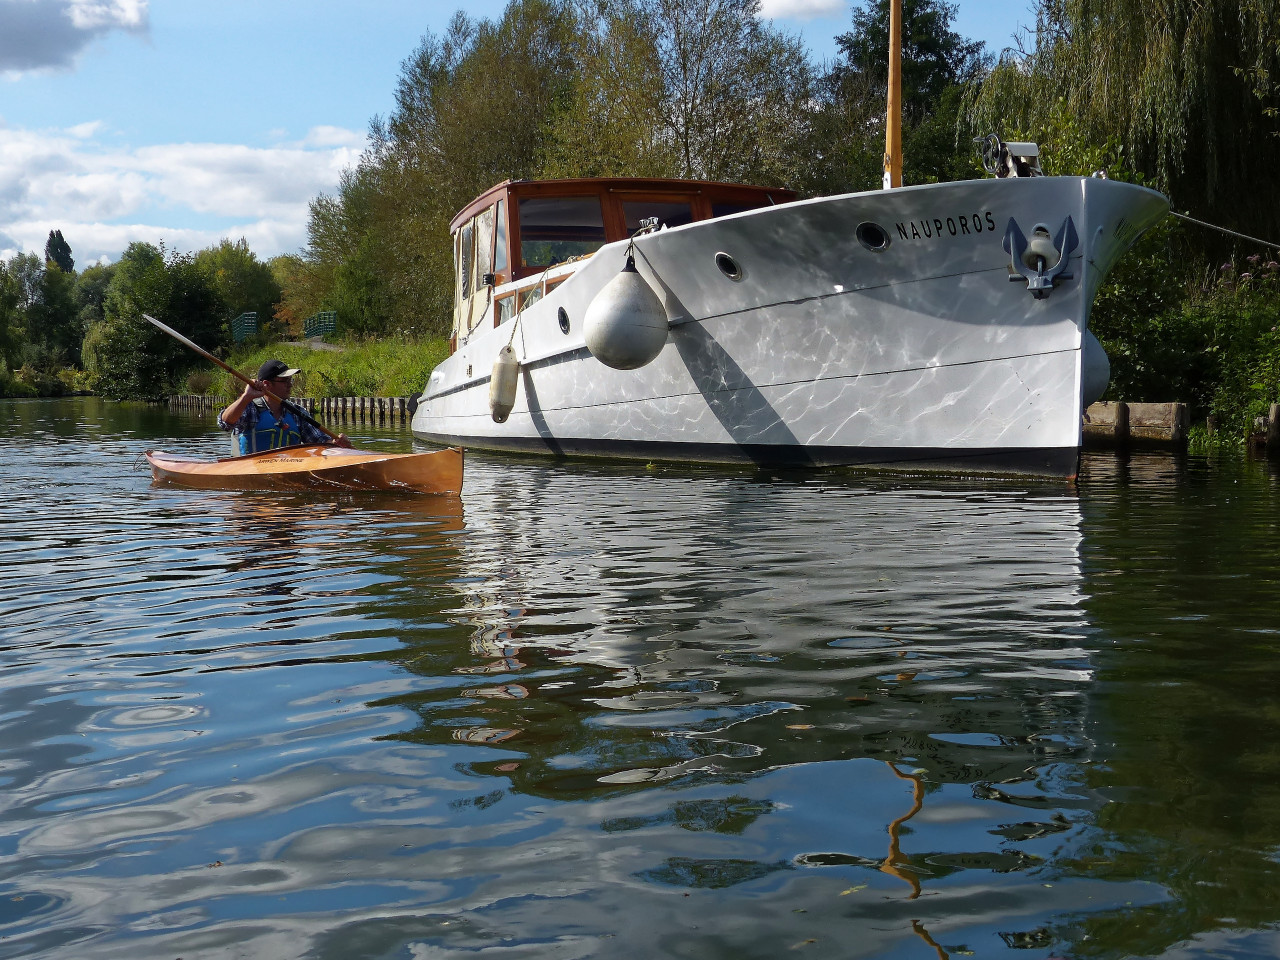 Le Wood Duck 12 devant le Nauporos : certes, tous deux sont des bateaux... Pour plus de détails sur le Nauporos, voyez sa page Facebook. Guillaume propose son bateau comme gîte fluvial mobile pour 4 personnes : plus d'infos ici ou encore ici.